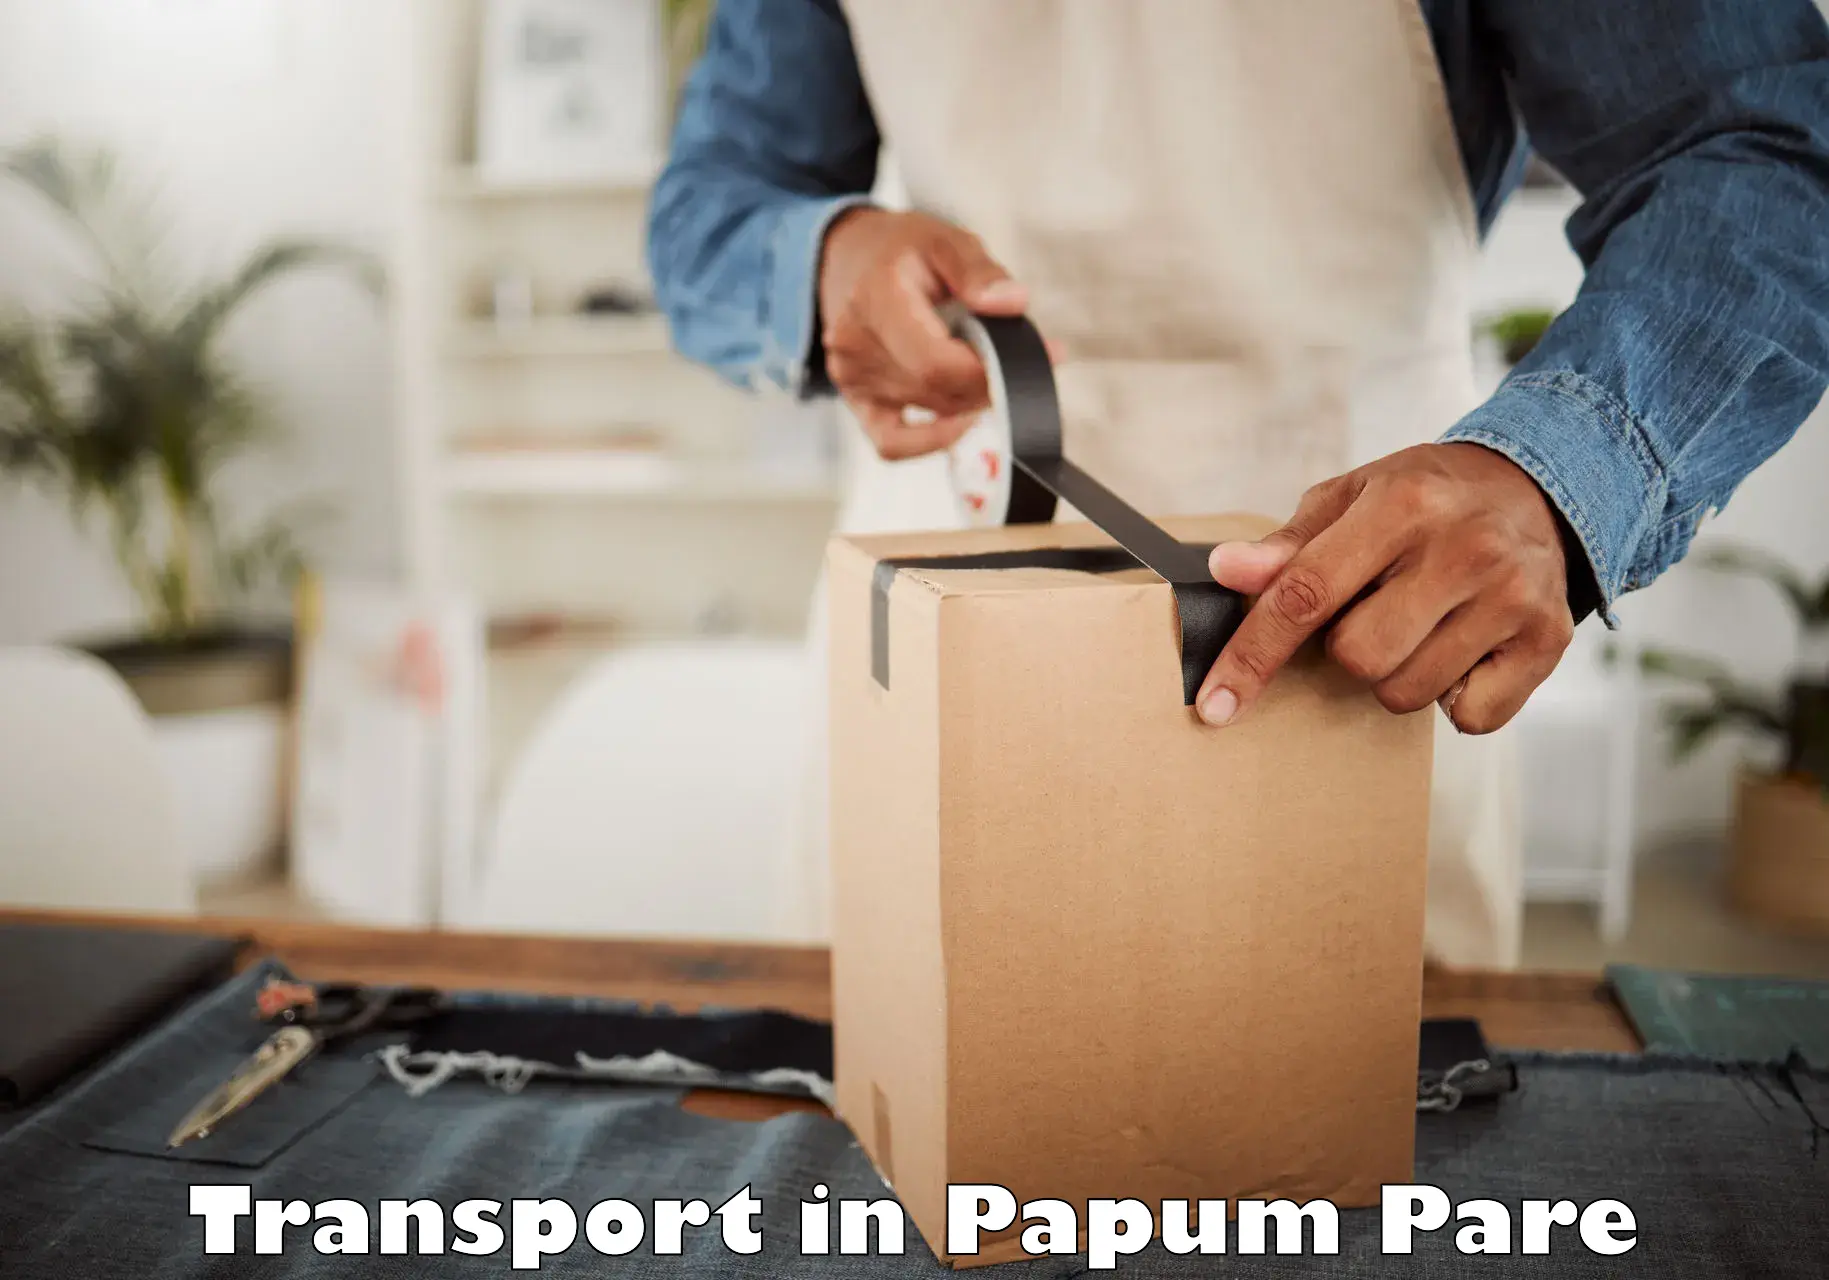 Parcel transport services in Papum Pare